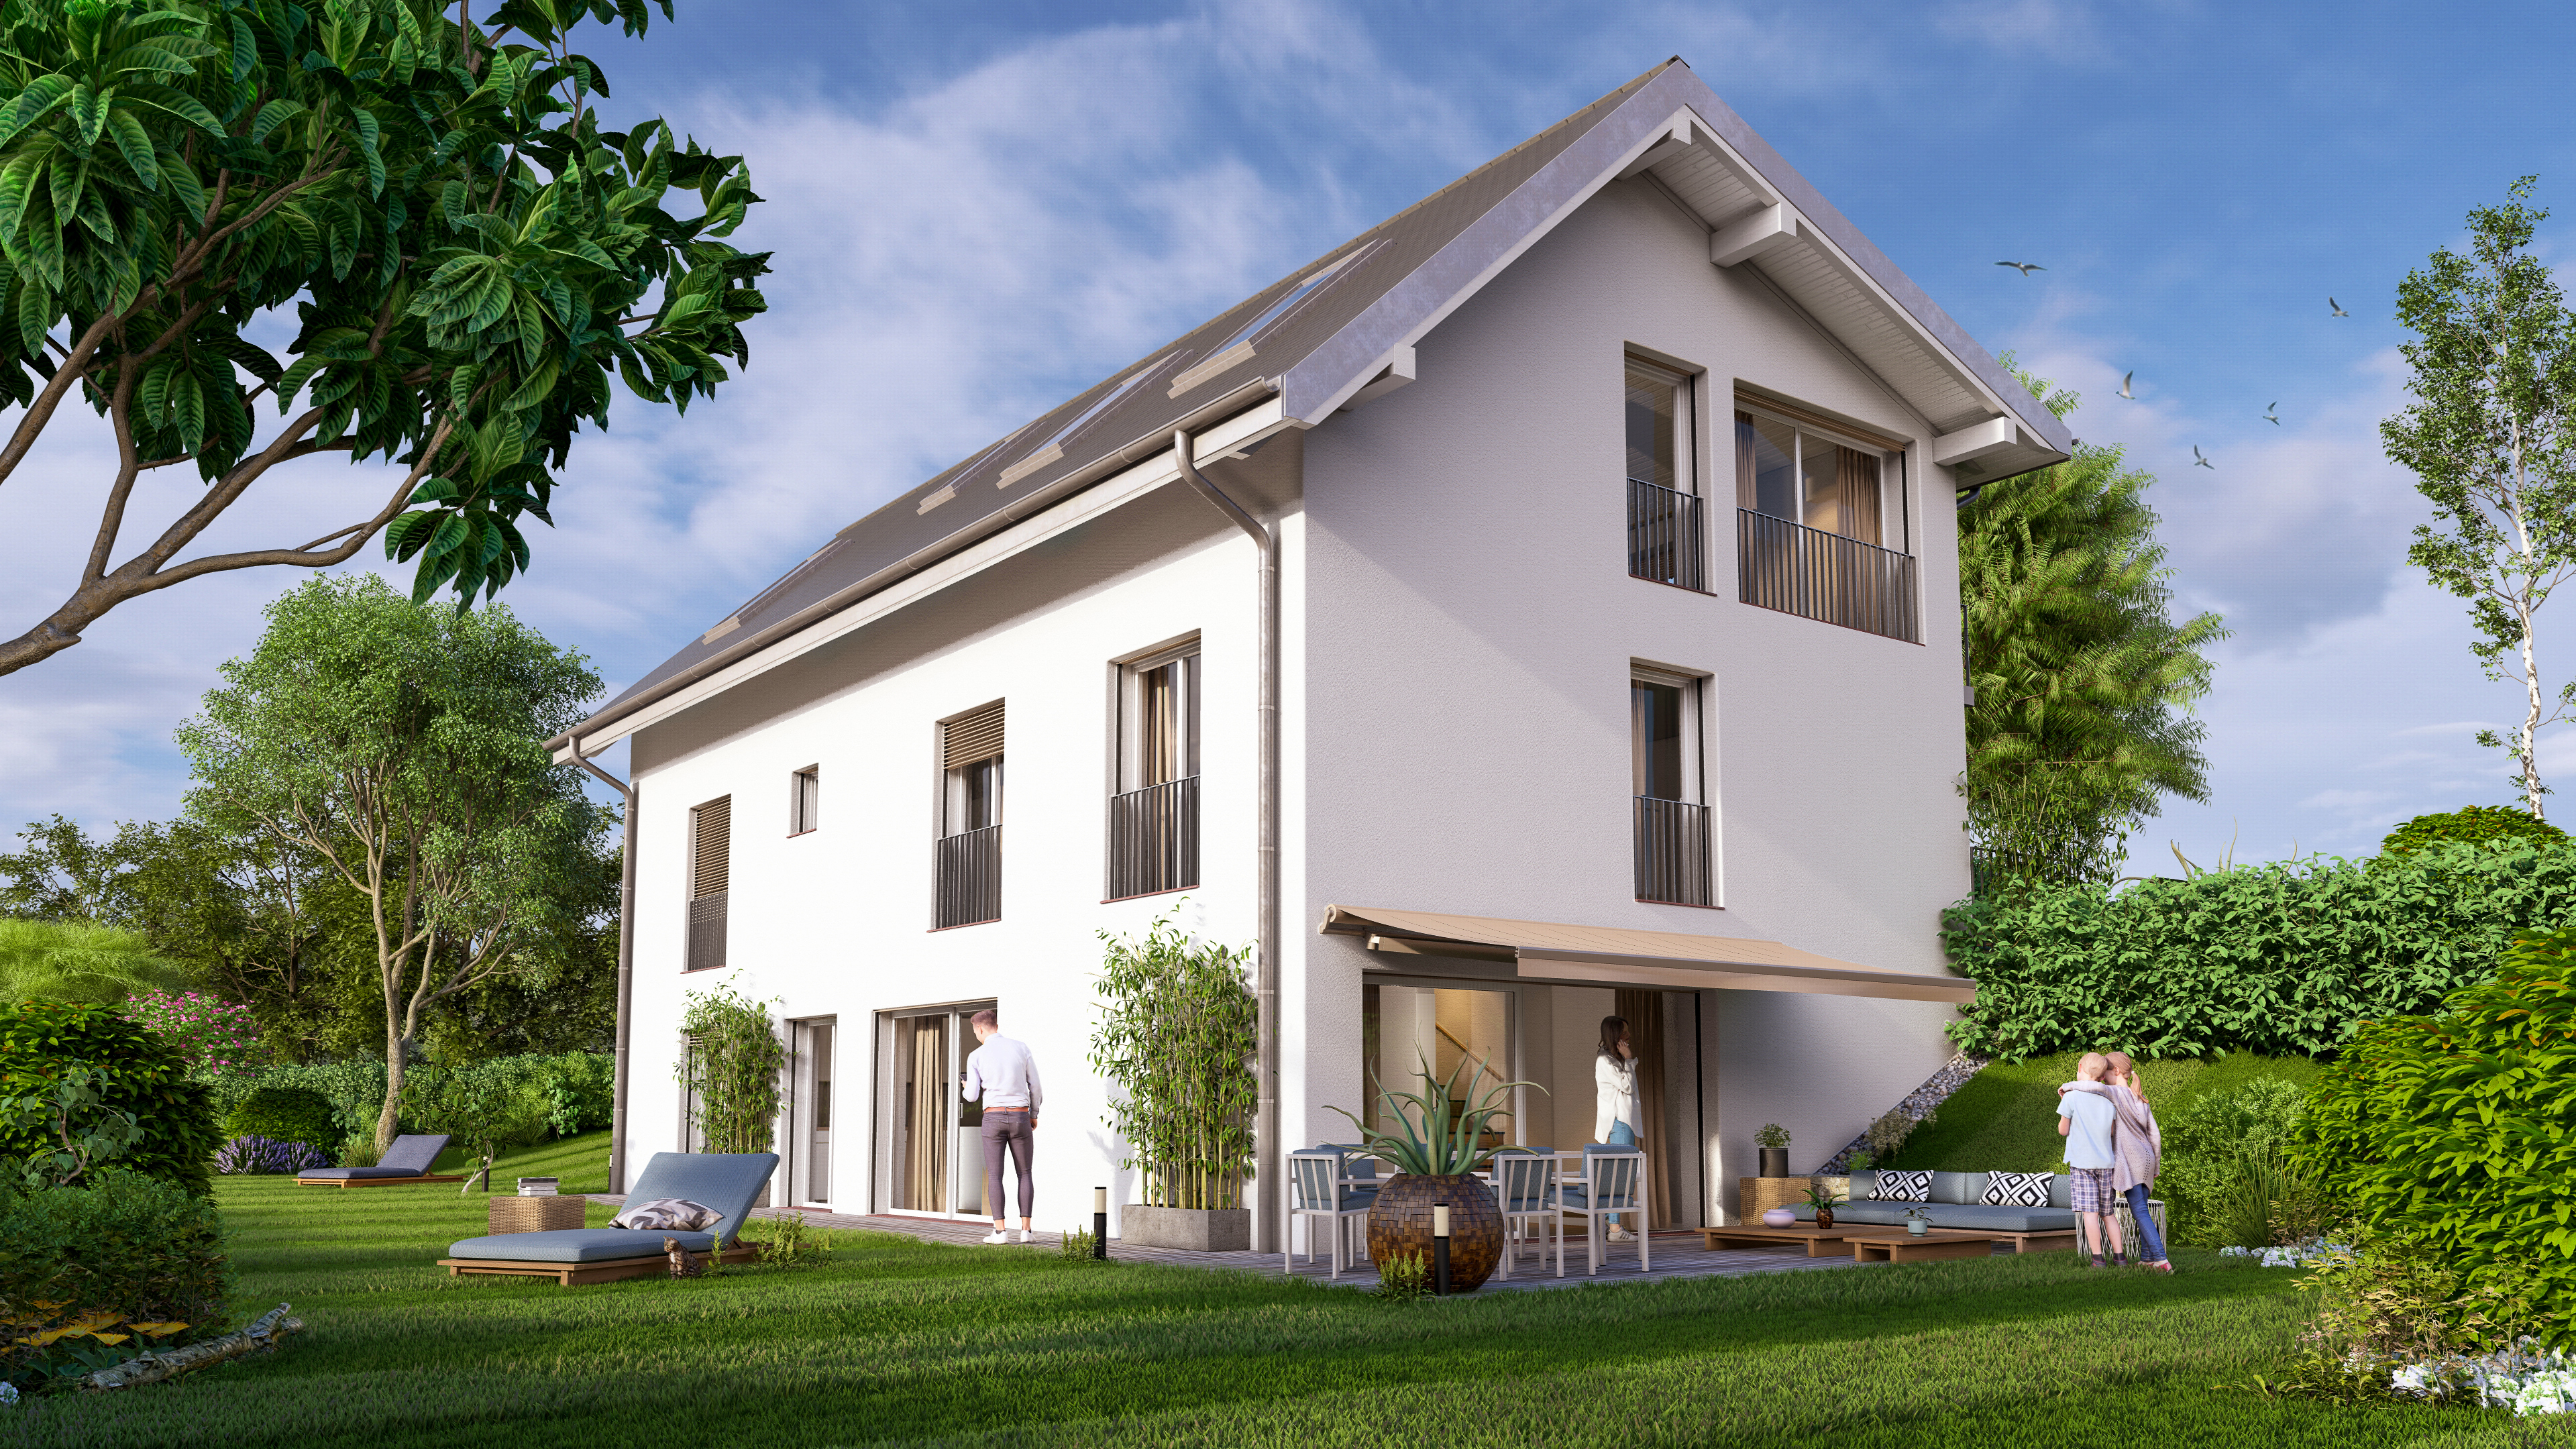 Projet immobilier avec appartements et villas jumelles à vendre au Mont-sur-Lausanne : image 3D extérieur.